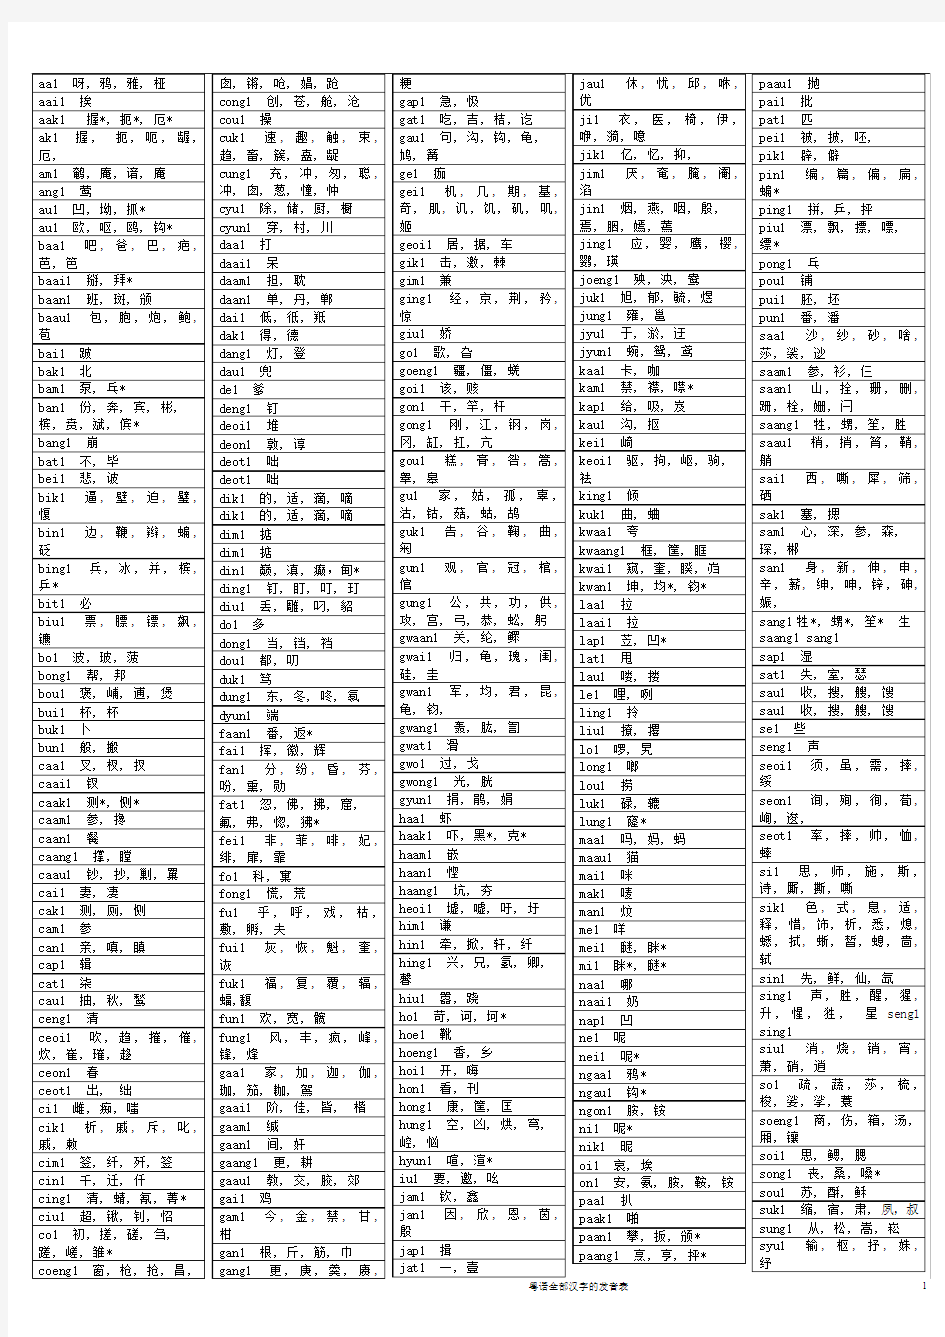 粤语全部汉字的发音表